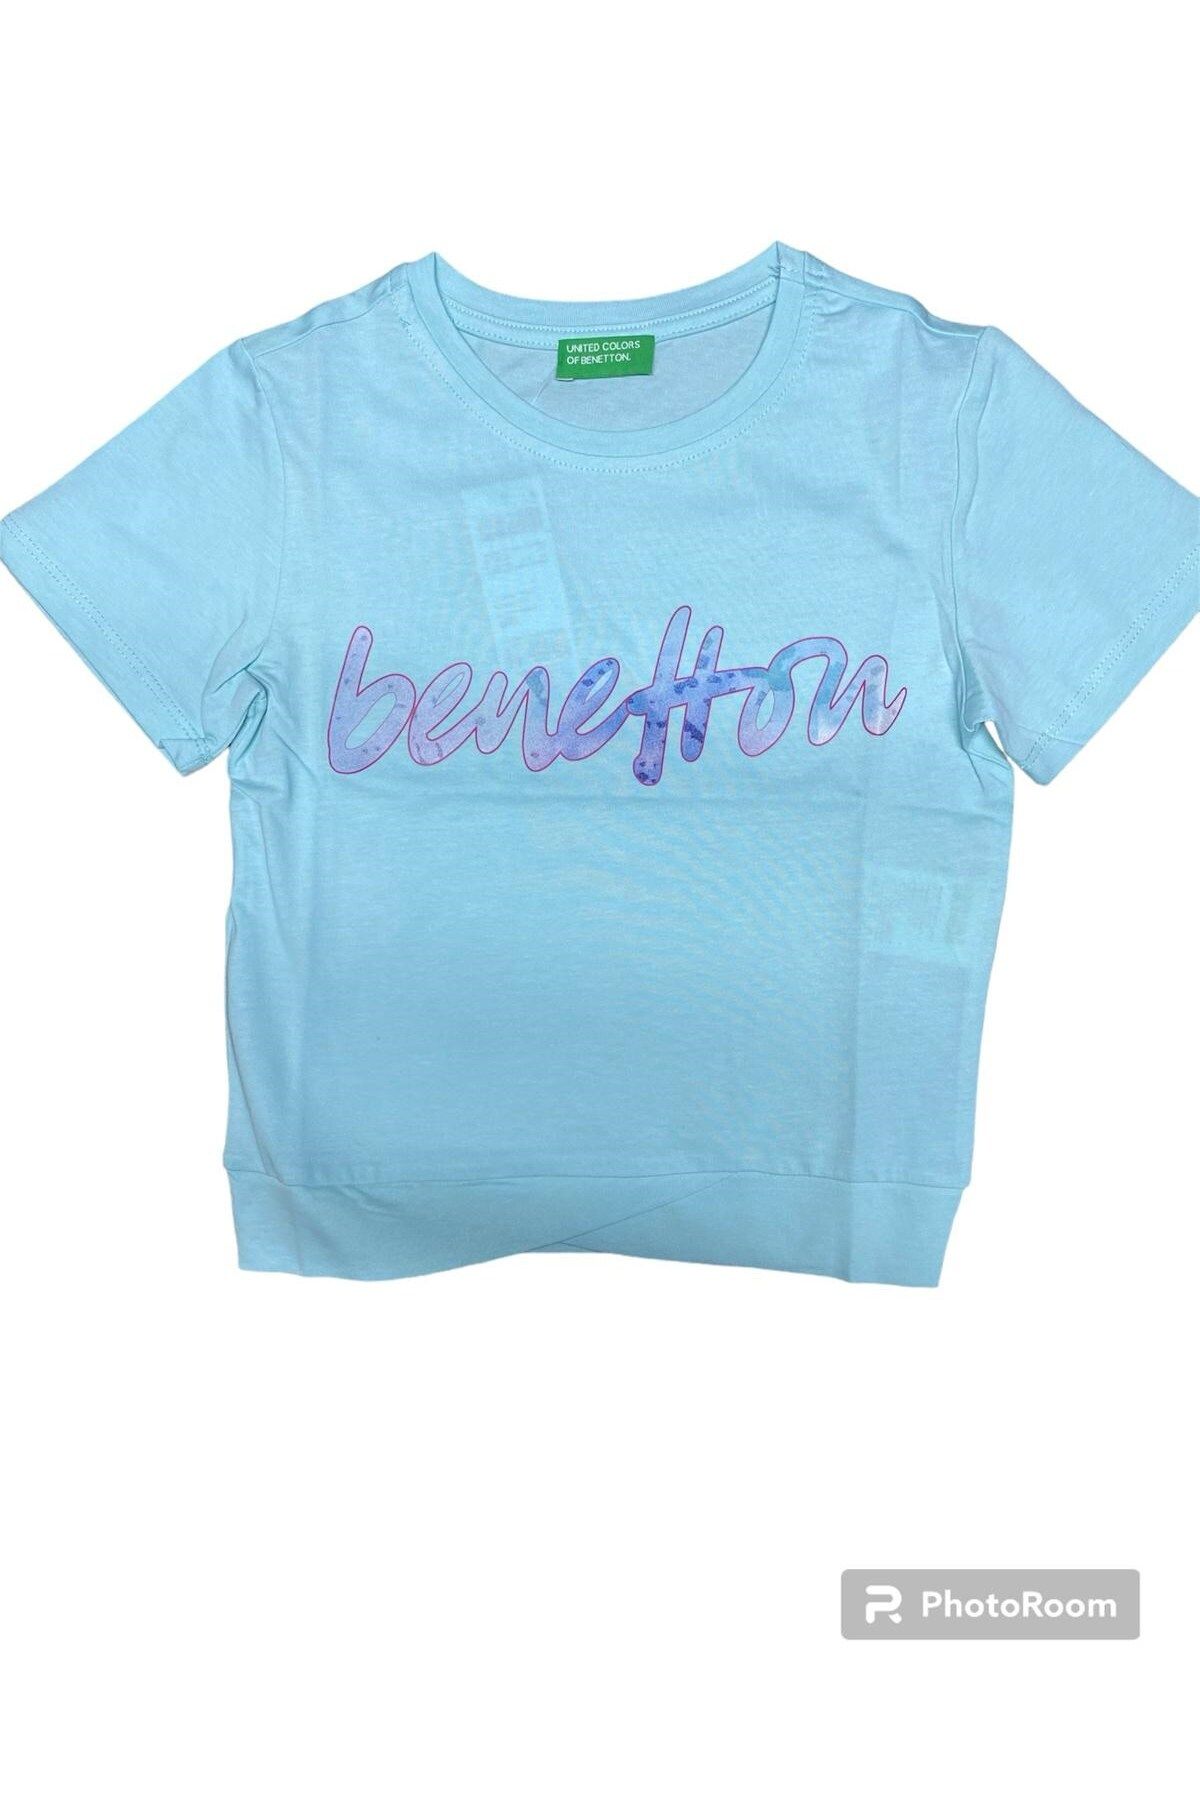 Benetton Kız Çocuk Tişört